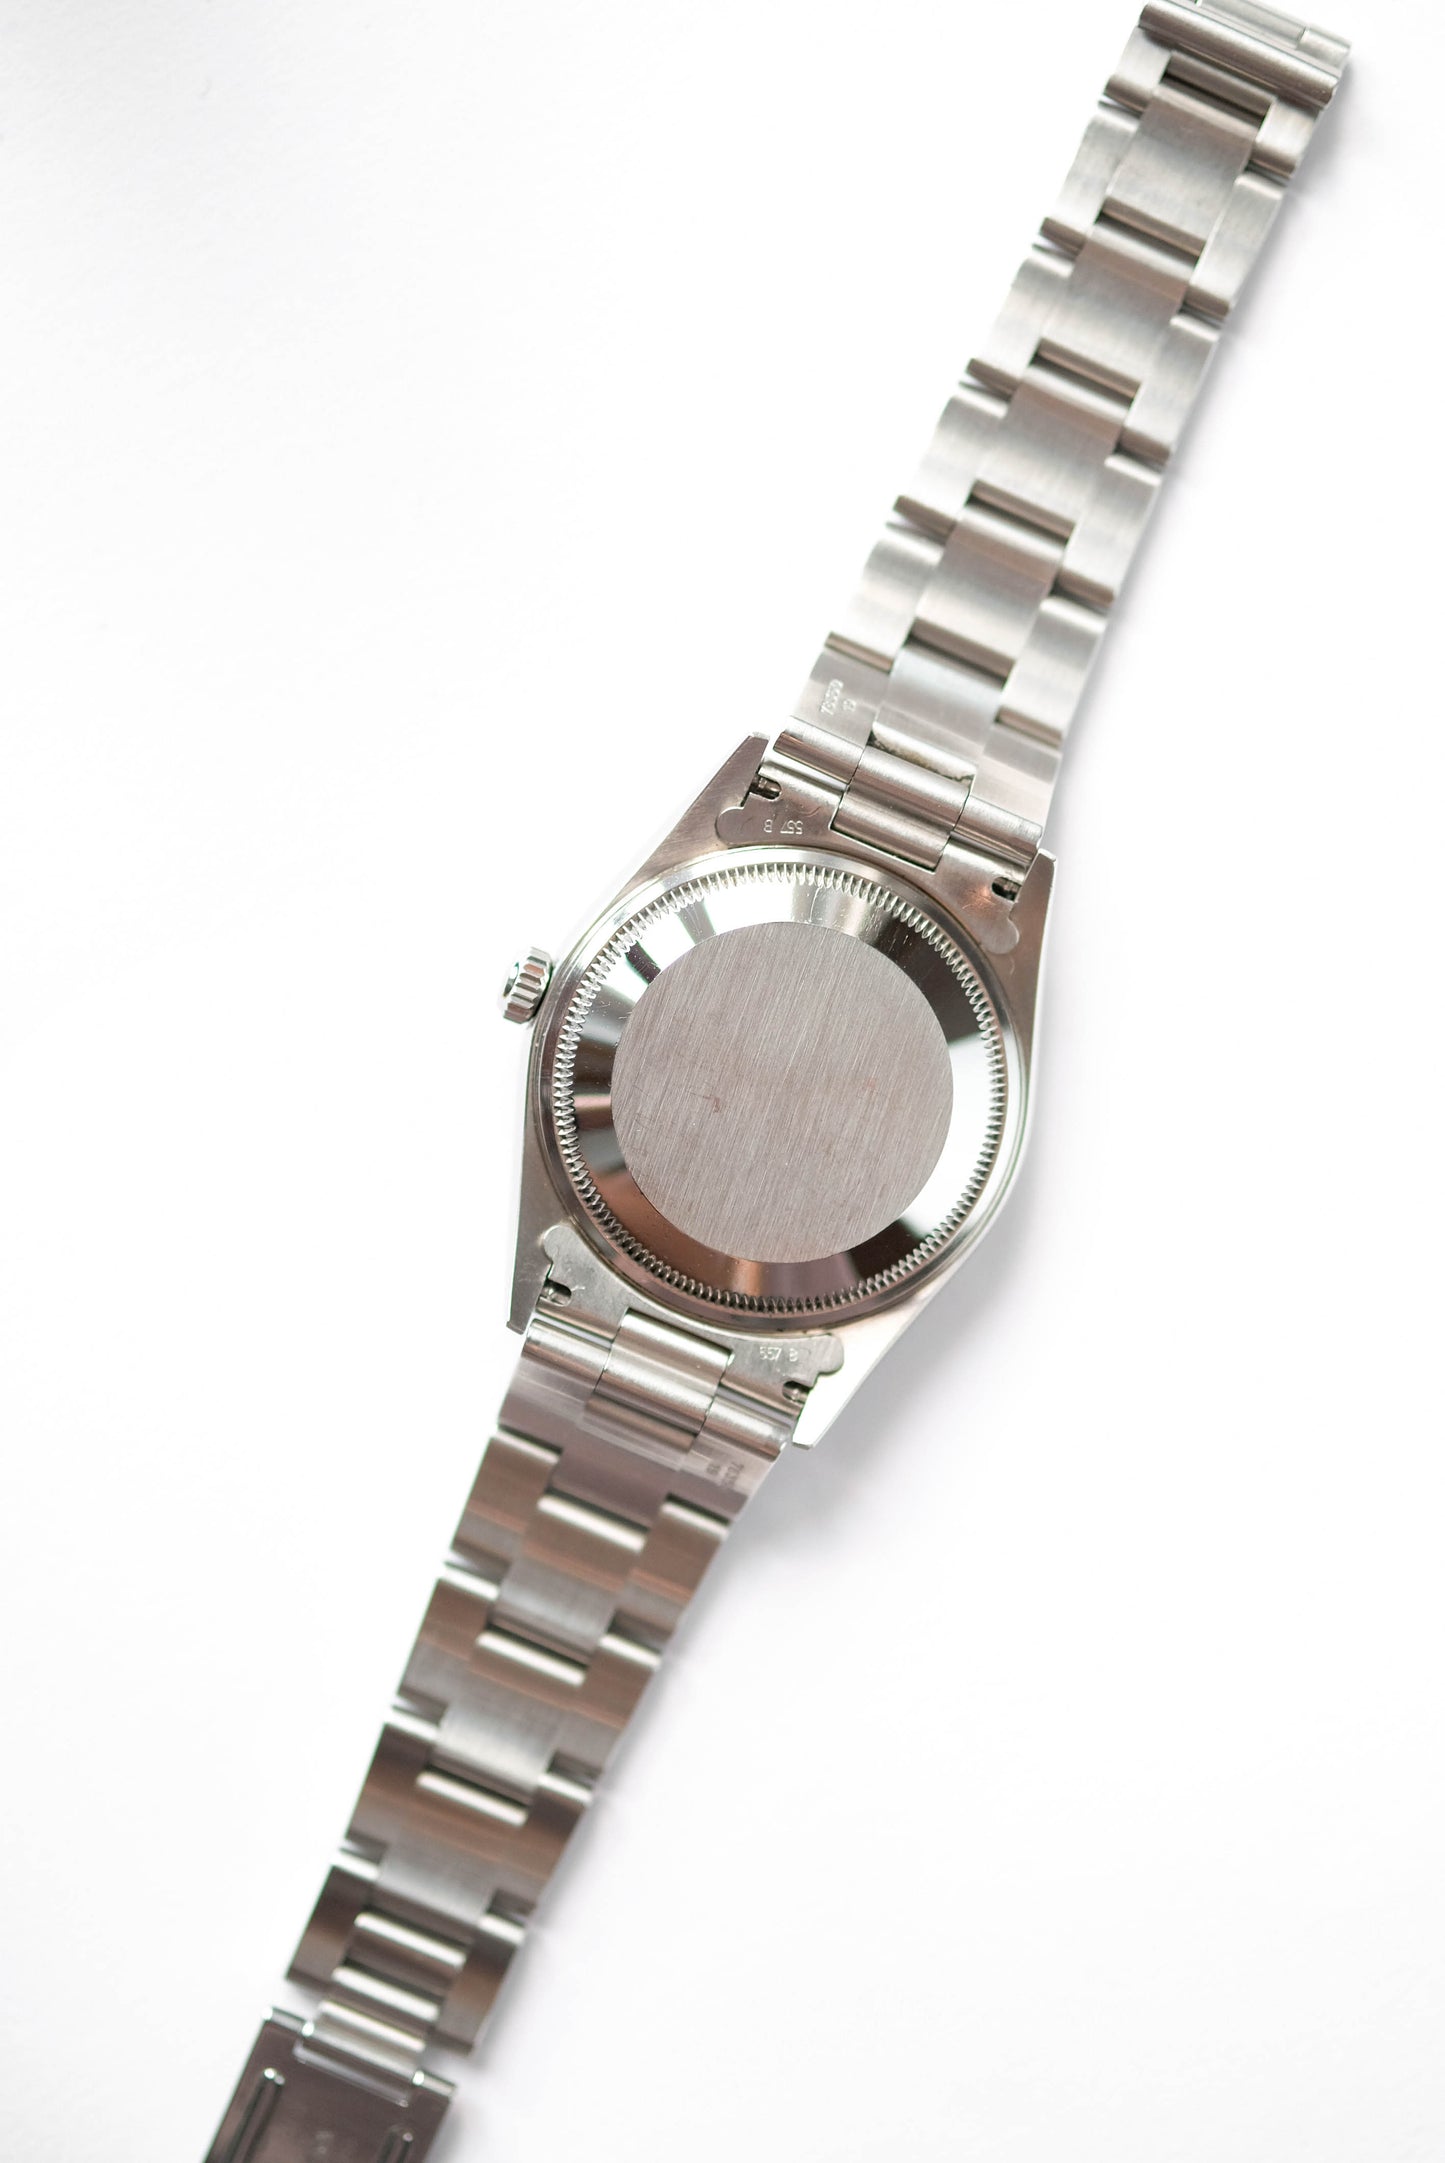 Rolex Date Silver Ref. 15200 - 2002